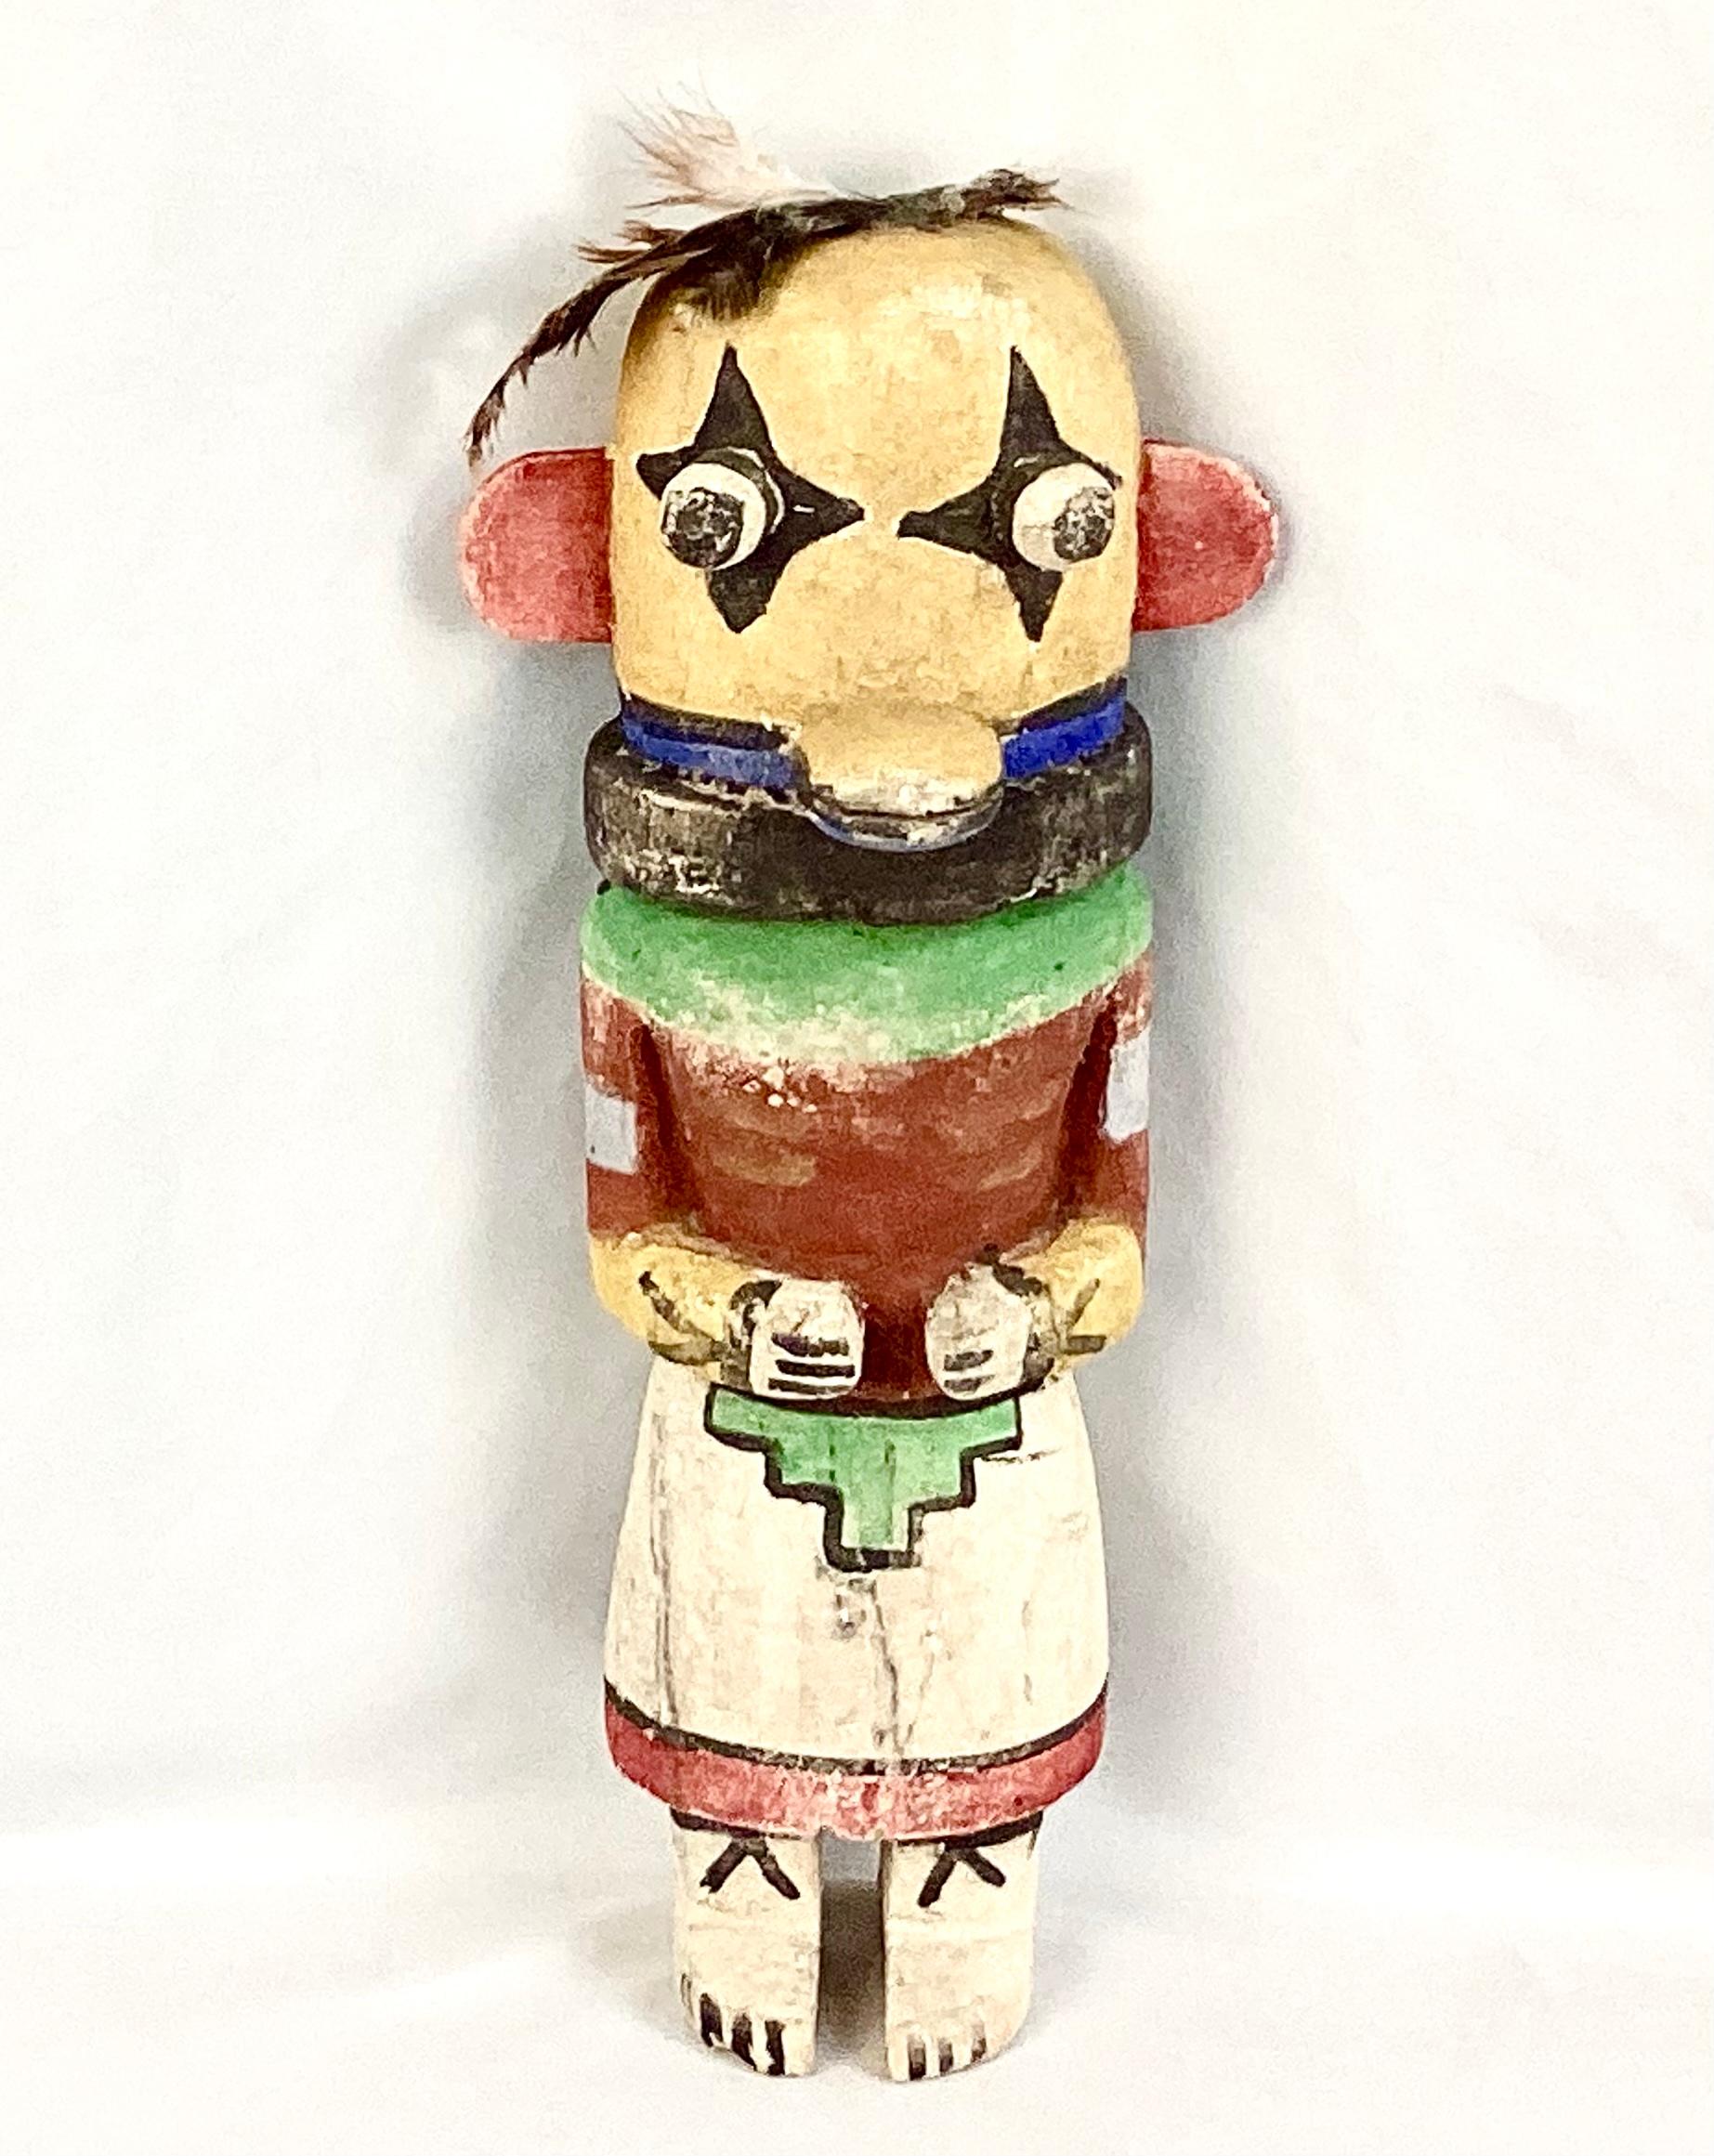 Les figurines Hopi katsina (langue Hopi : tithu ou katsintithu), également connues sous le nom de poupées kachina, sont des figurines sculptées, généralement dans une racine de peuplier, par les Hopis pour instruire les jeunes filles et les